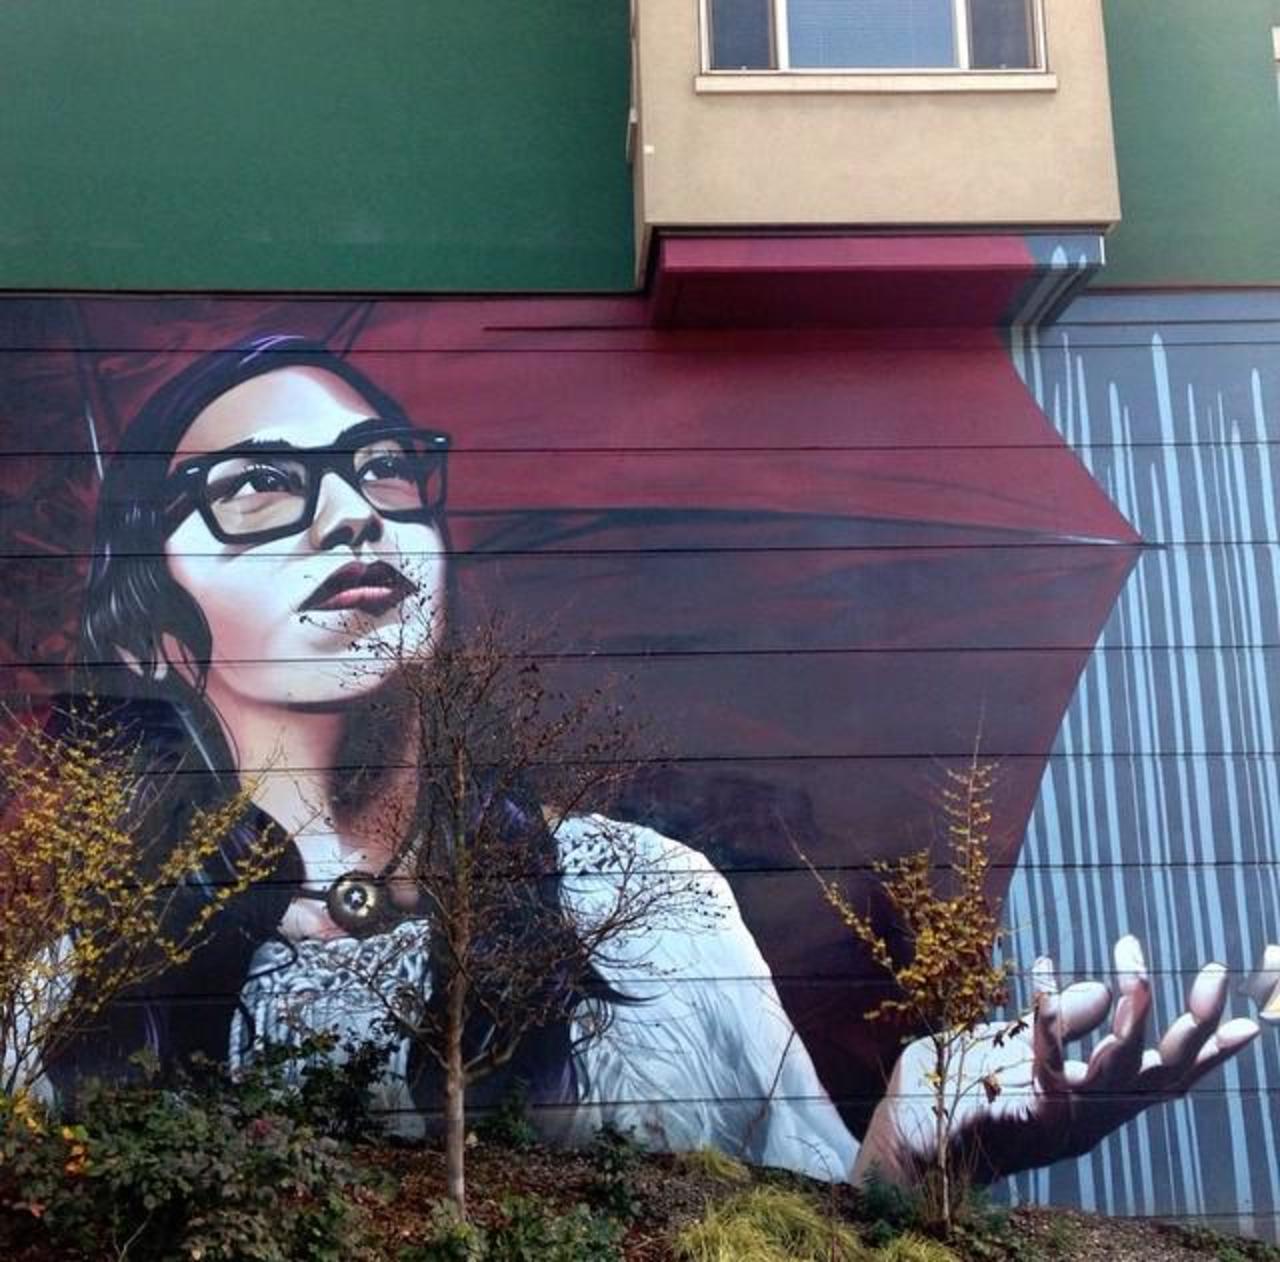 Artist Eras MFK Street Art piece in Capitol Hill, Seattle

#art #mural #graffiti #streetart http://t.co/VtmoBBCGUw